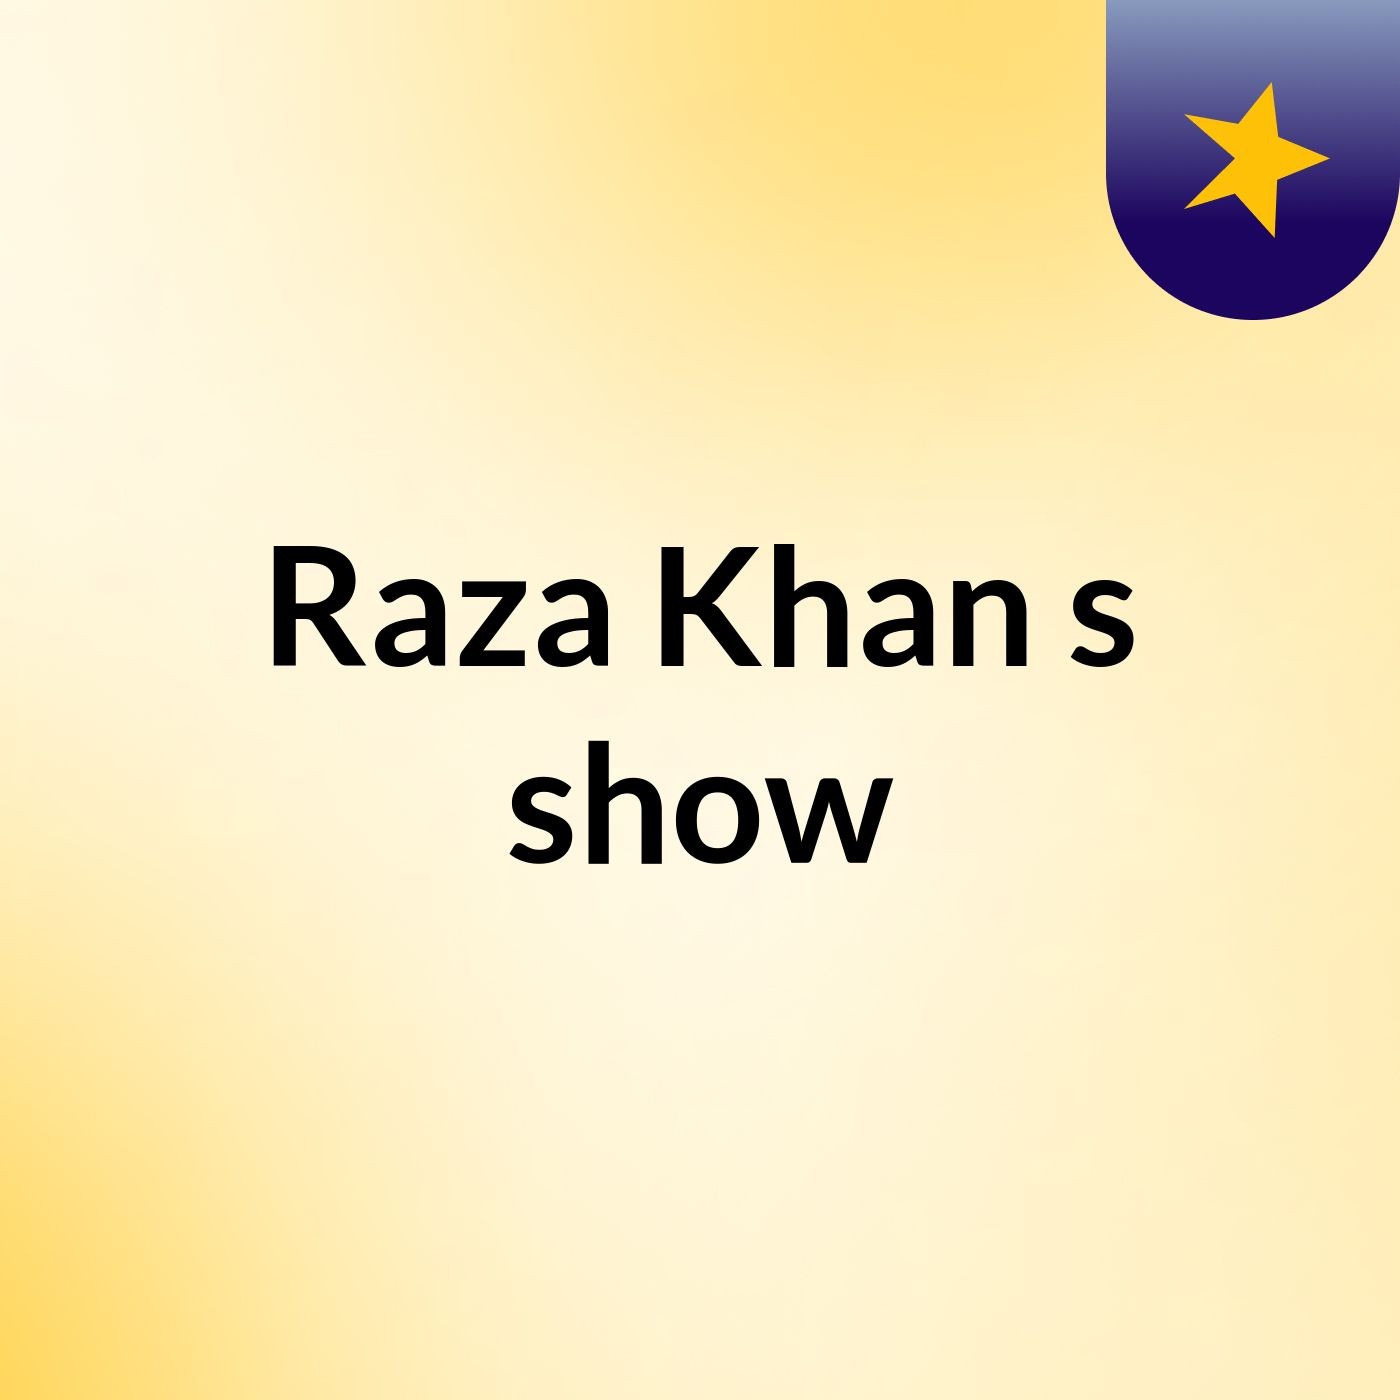 Raza Khan's show